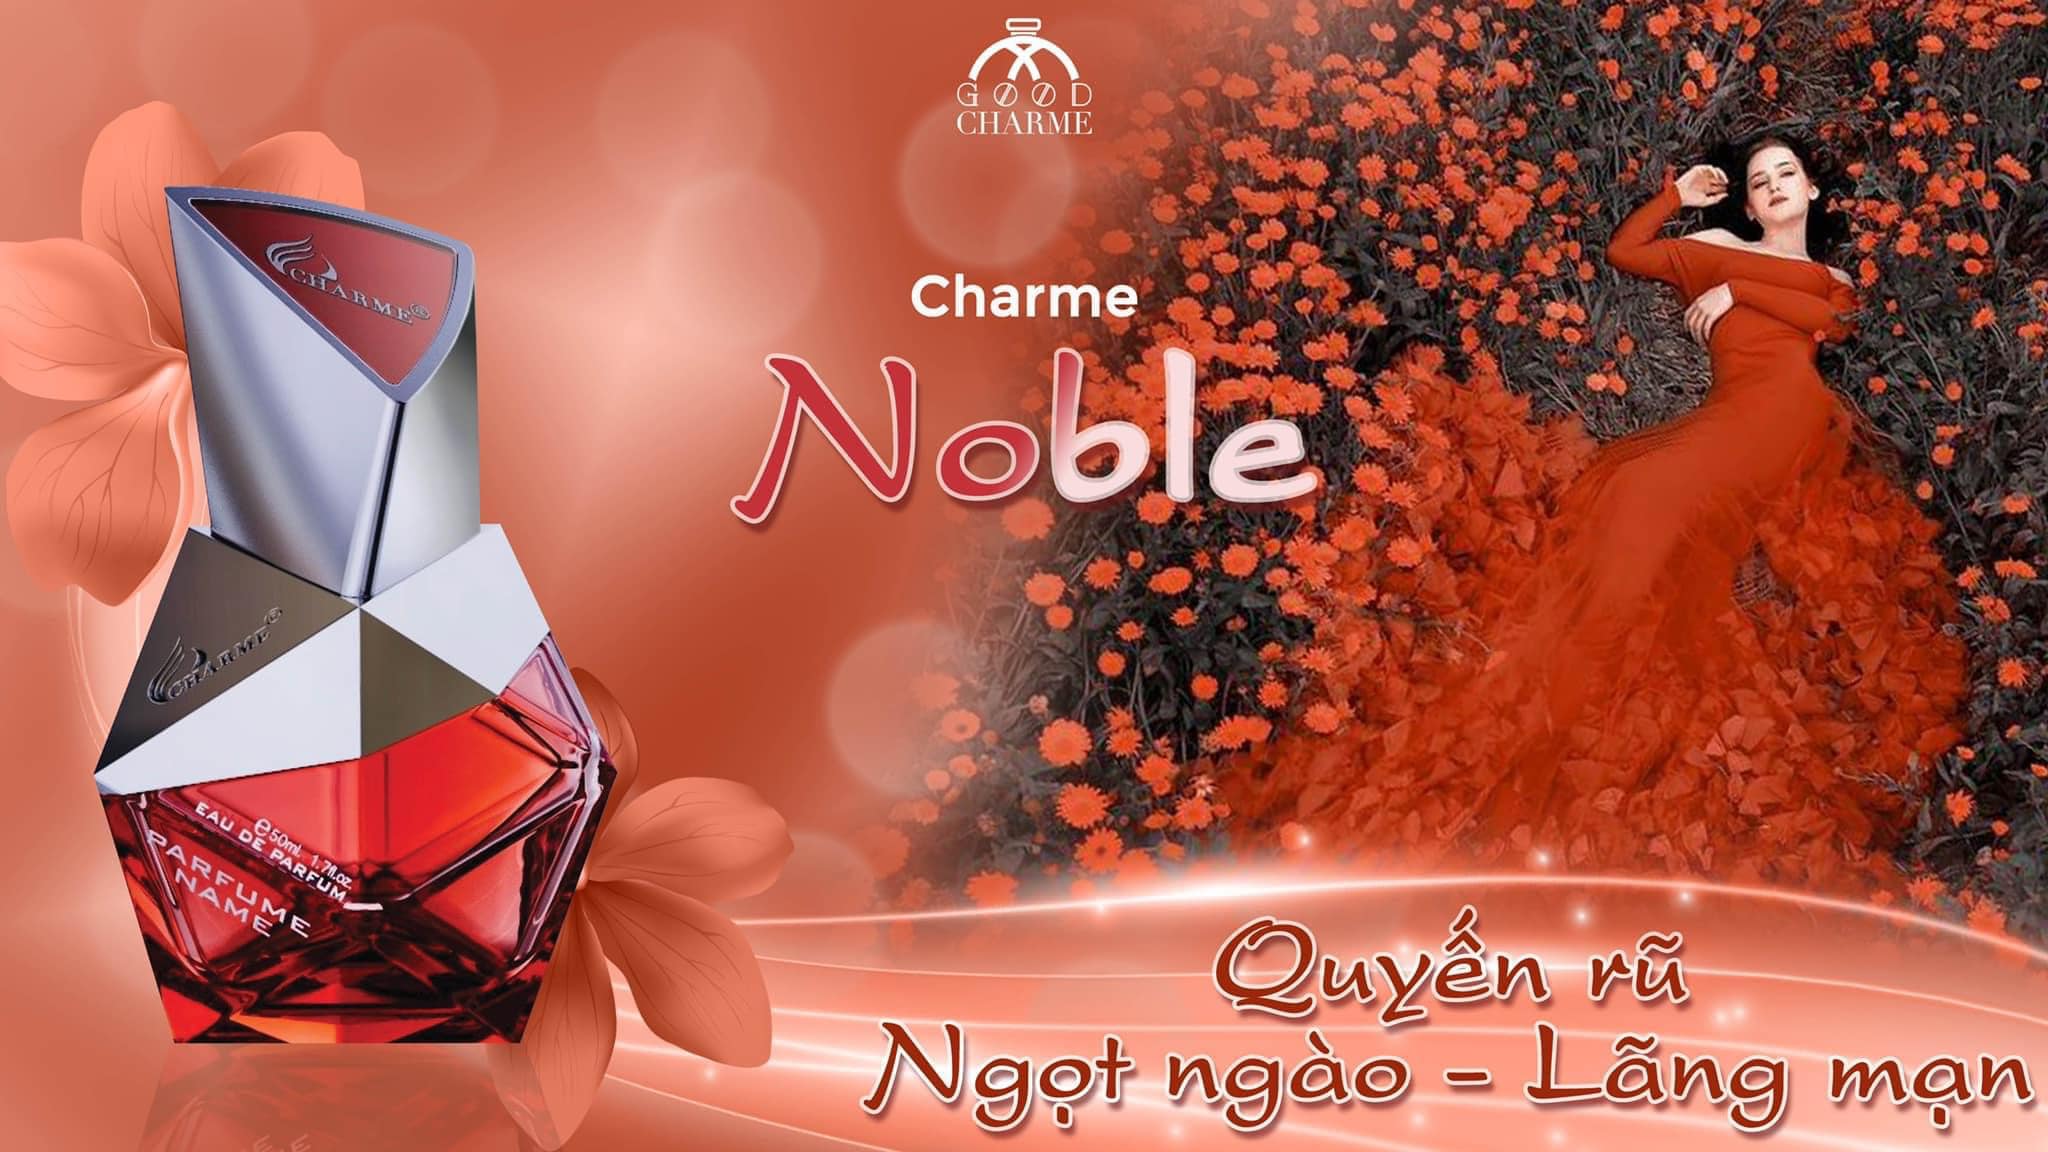 Nước hoa nữ lưu hương lâu, Charme Noble, chiết xuất hoa cam, ngọt ngào, quyến rũ, đầy sức hút, 50ml